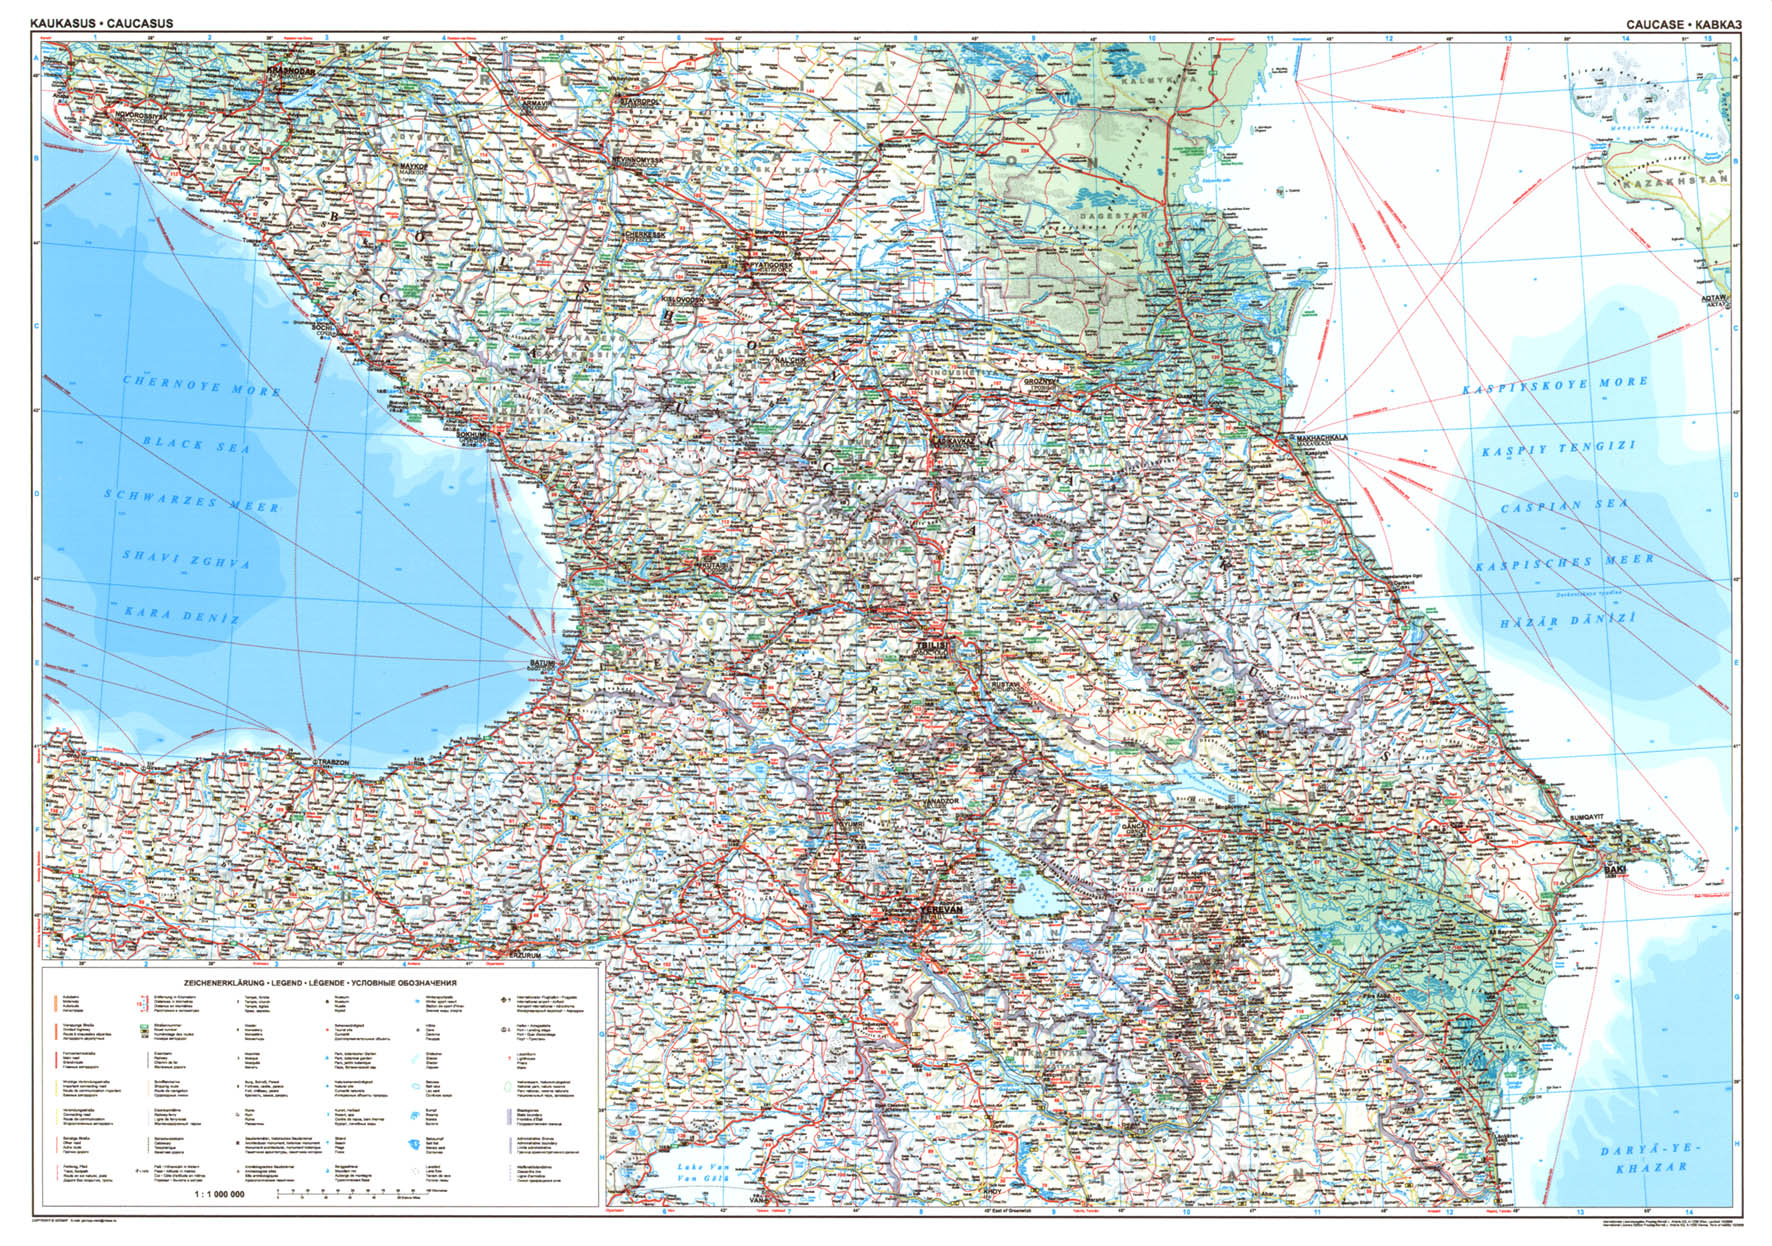 Caucasus (road) overview map